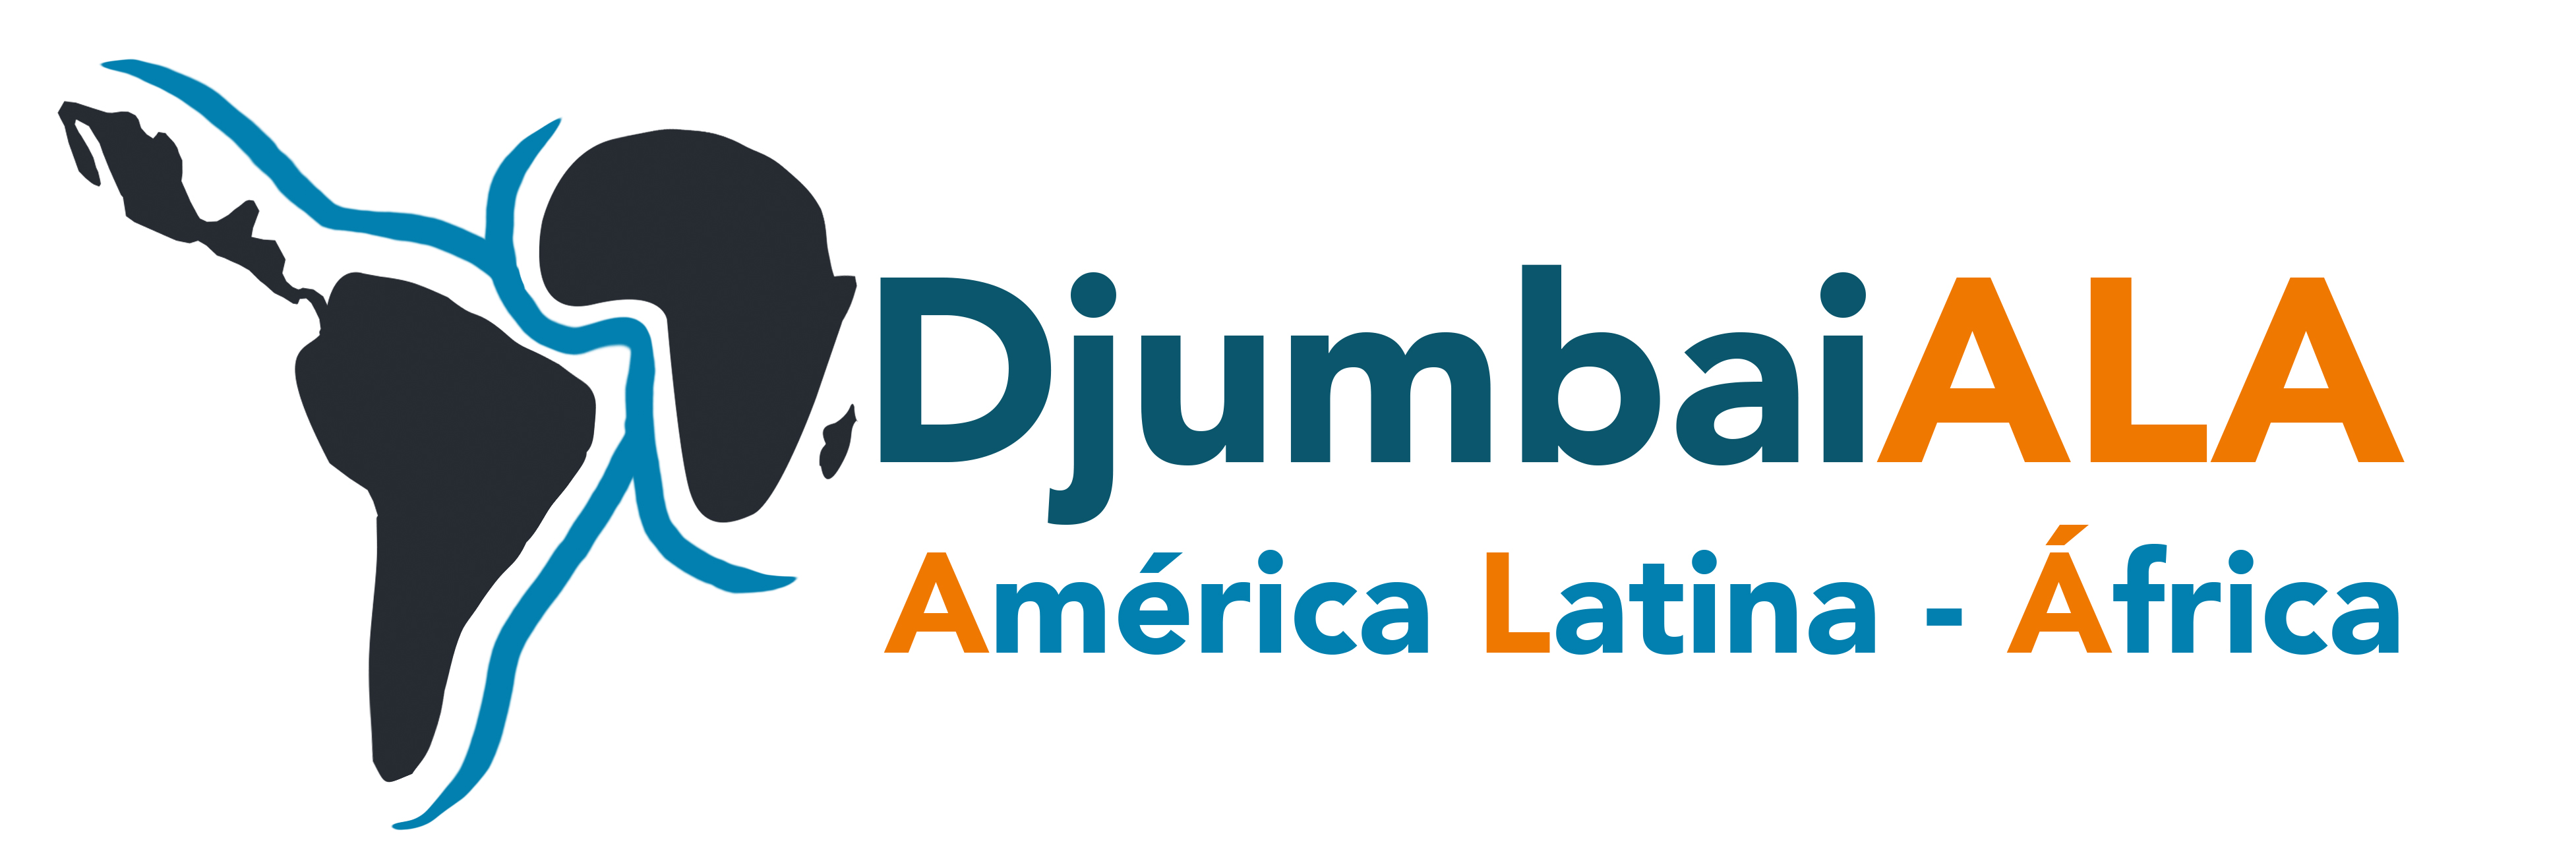 Logo Djumbaiala